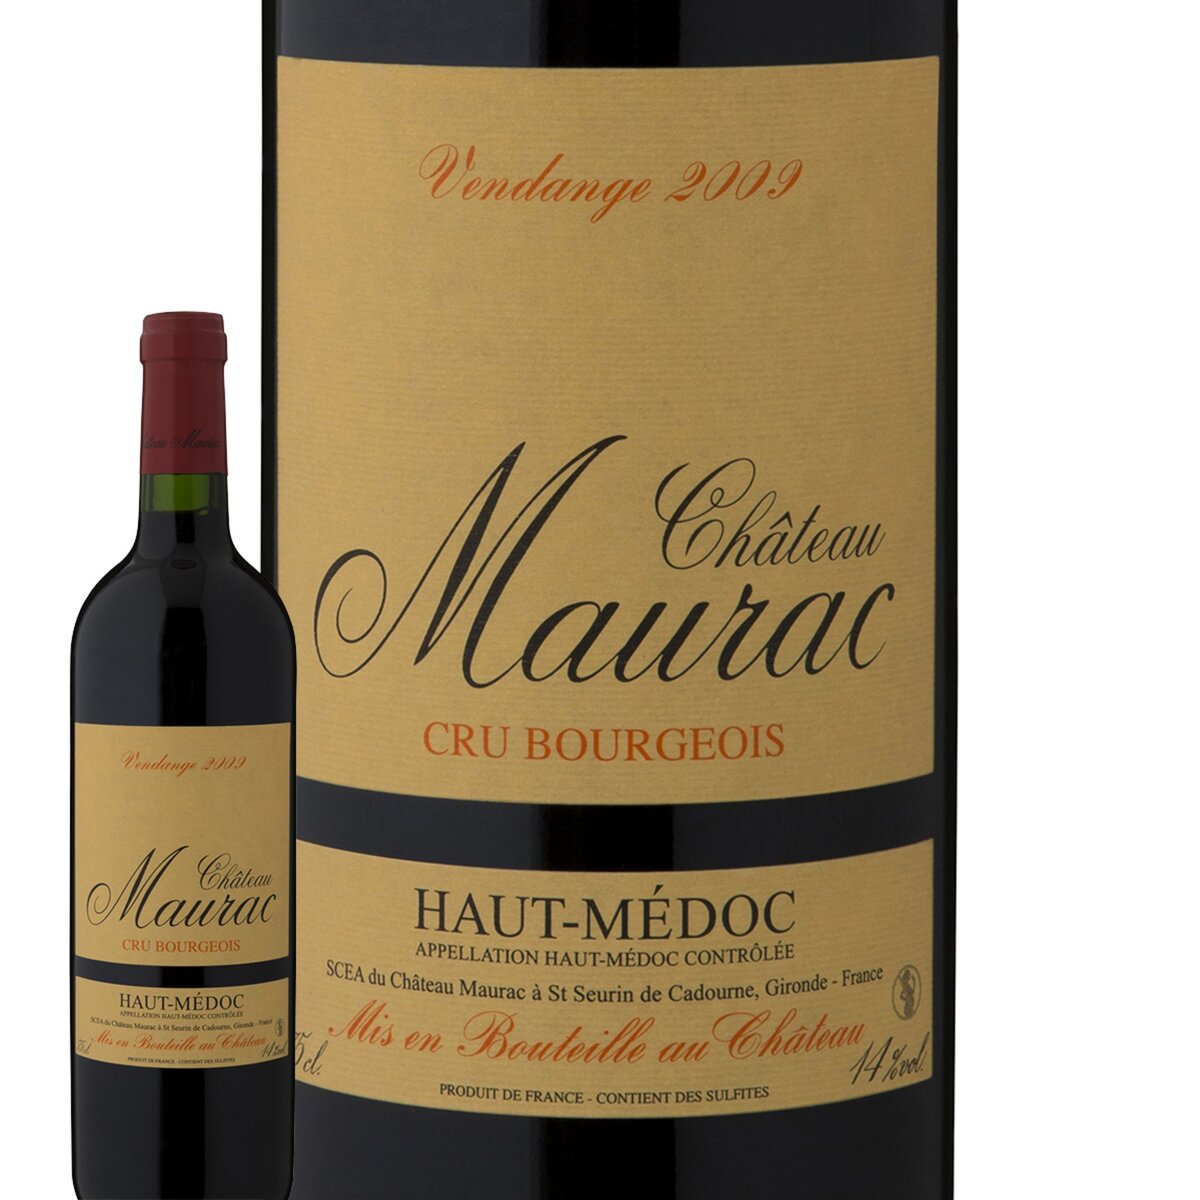 Château Maurac Haut-Médoc Cru Bourgeois Rouge 2009